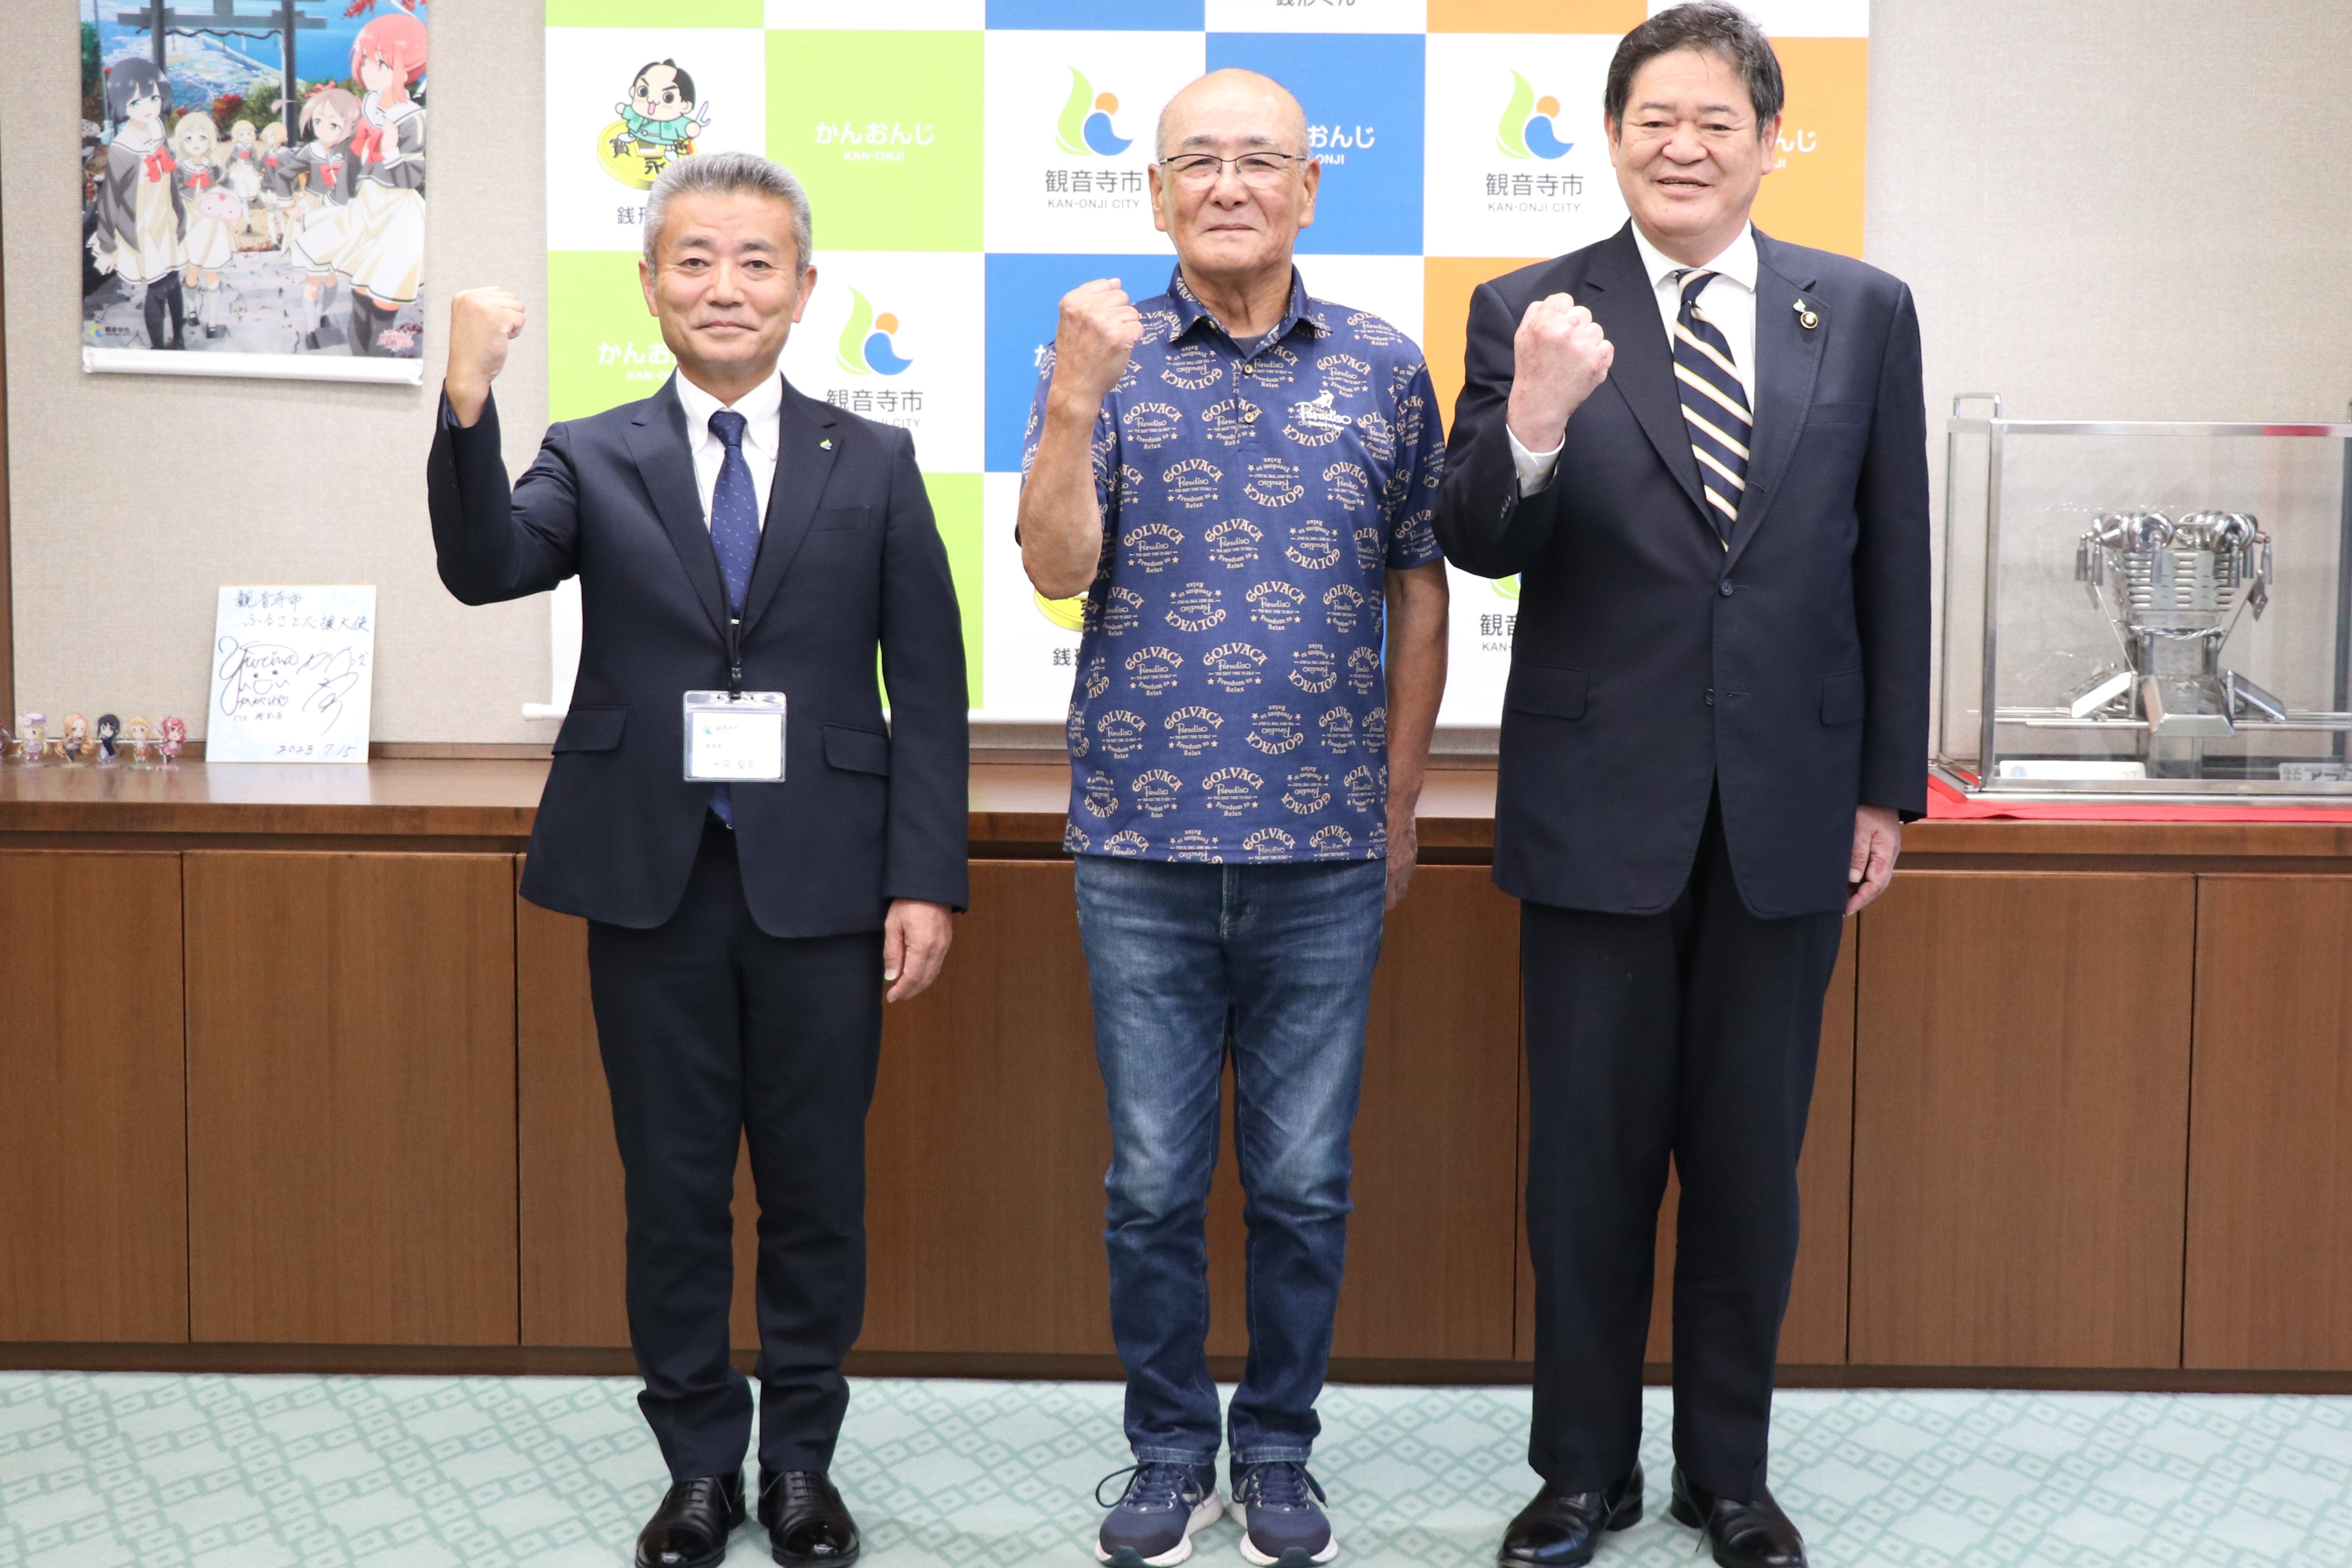 国民体育大会に出場する山本さんと、市長、教育長の写真